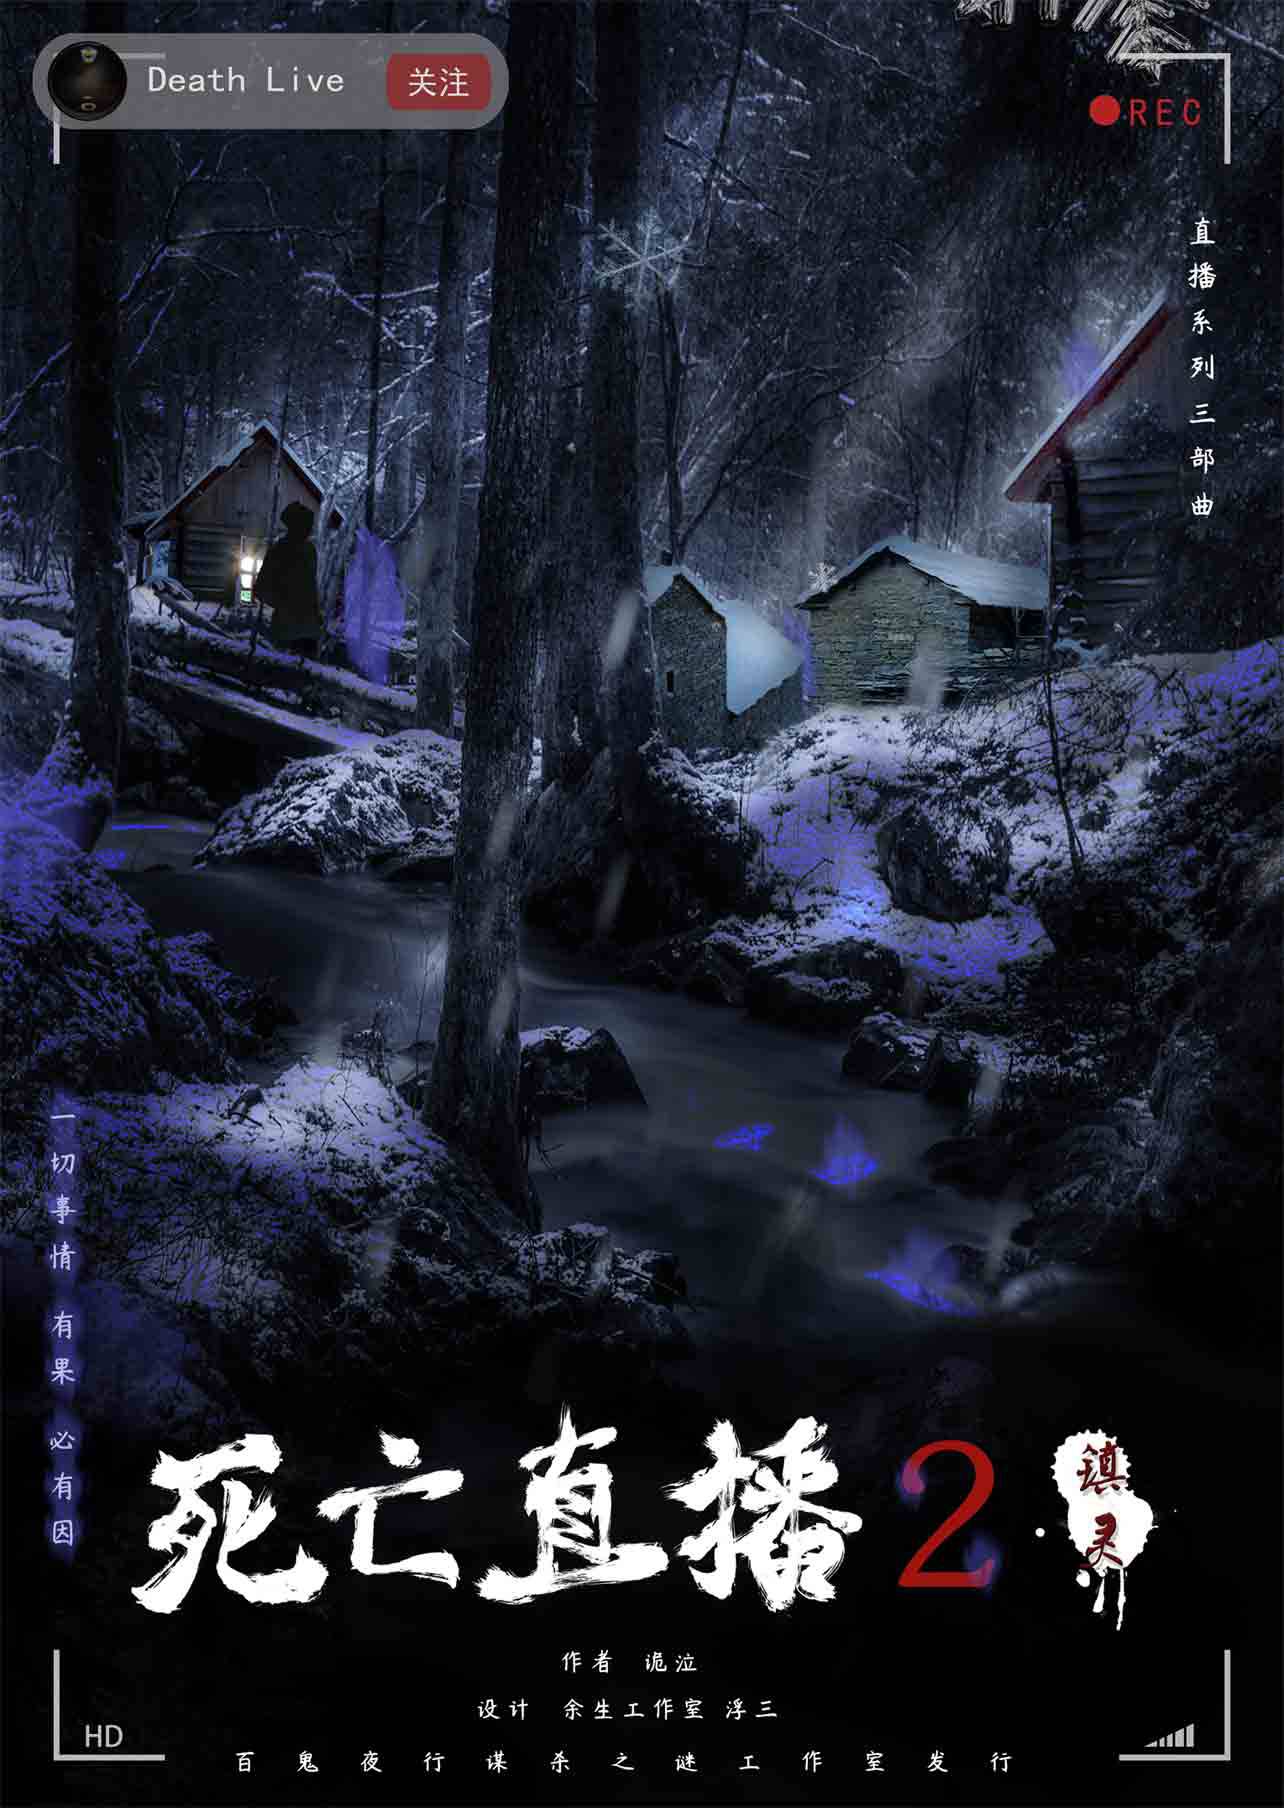 《死亡之屋3》PC版最新画面(1)_游戏新闻_新浪游戏_新浪网